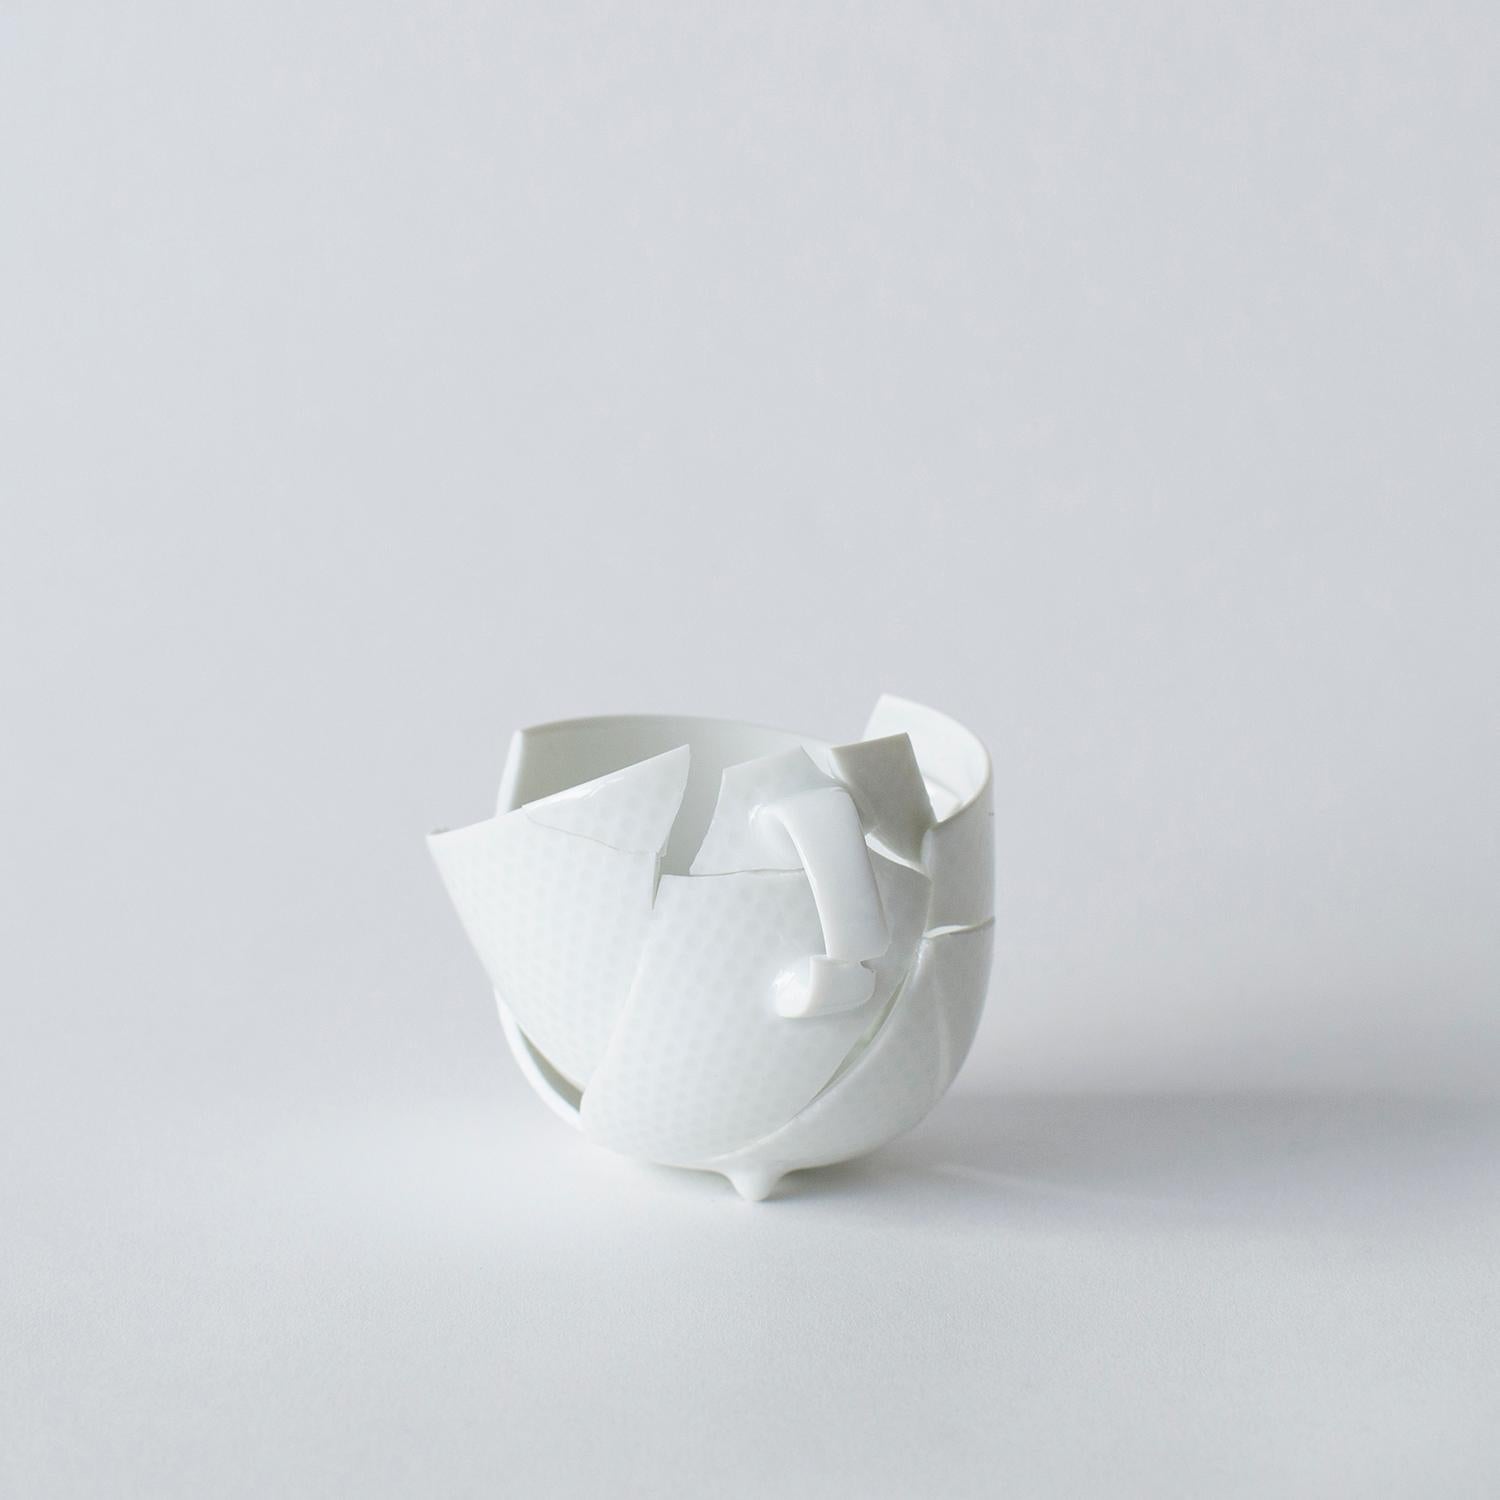 Diese Serie besteht aus einigen Glas- und einigen Keramikarbeiten. Diese Werke sind in Form und Aussehen einzigartig. Norihiko Terayama schuf sie aus beschädigten Vasen, Kaffeetassen und so weiter. Er beginnt, das beschädigte Objekt in einige